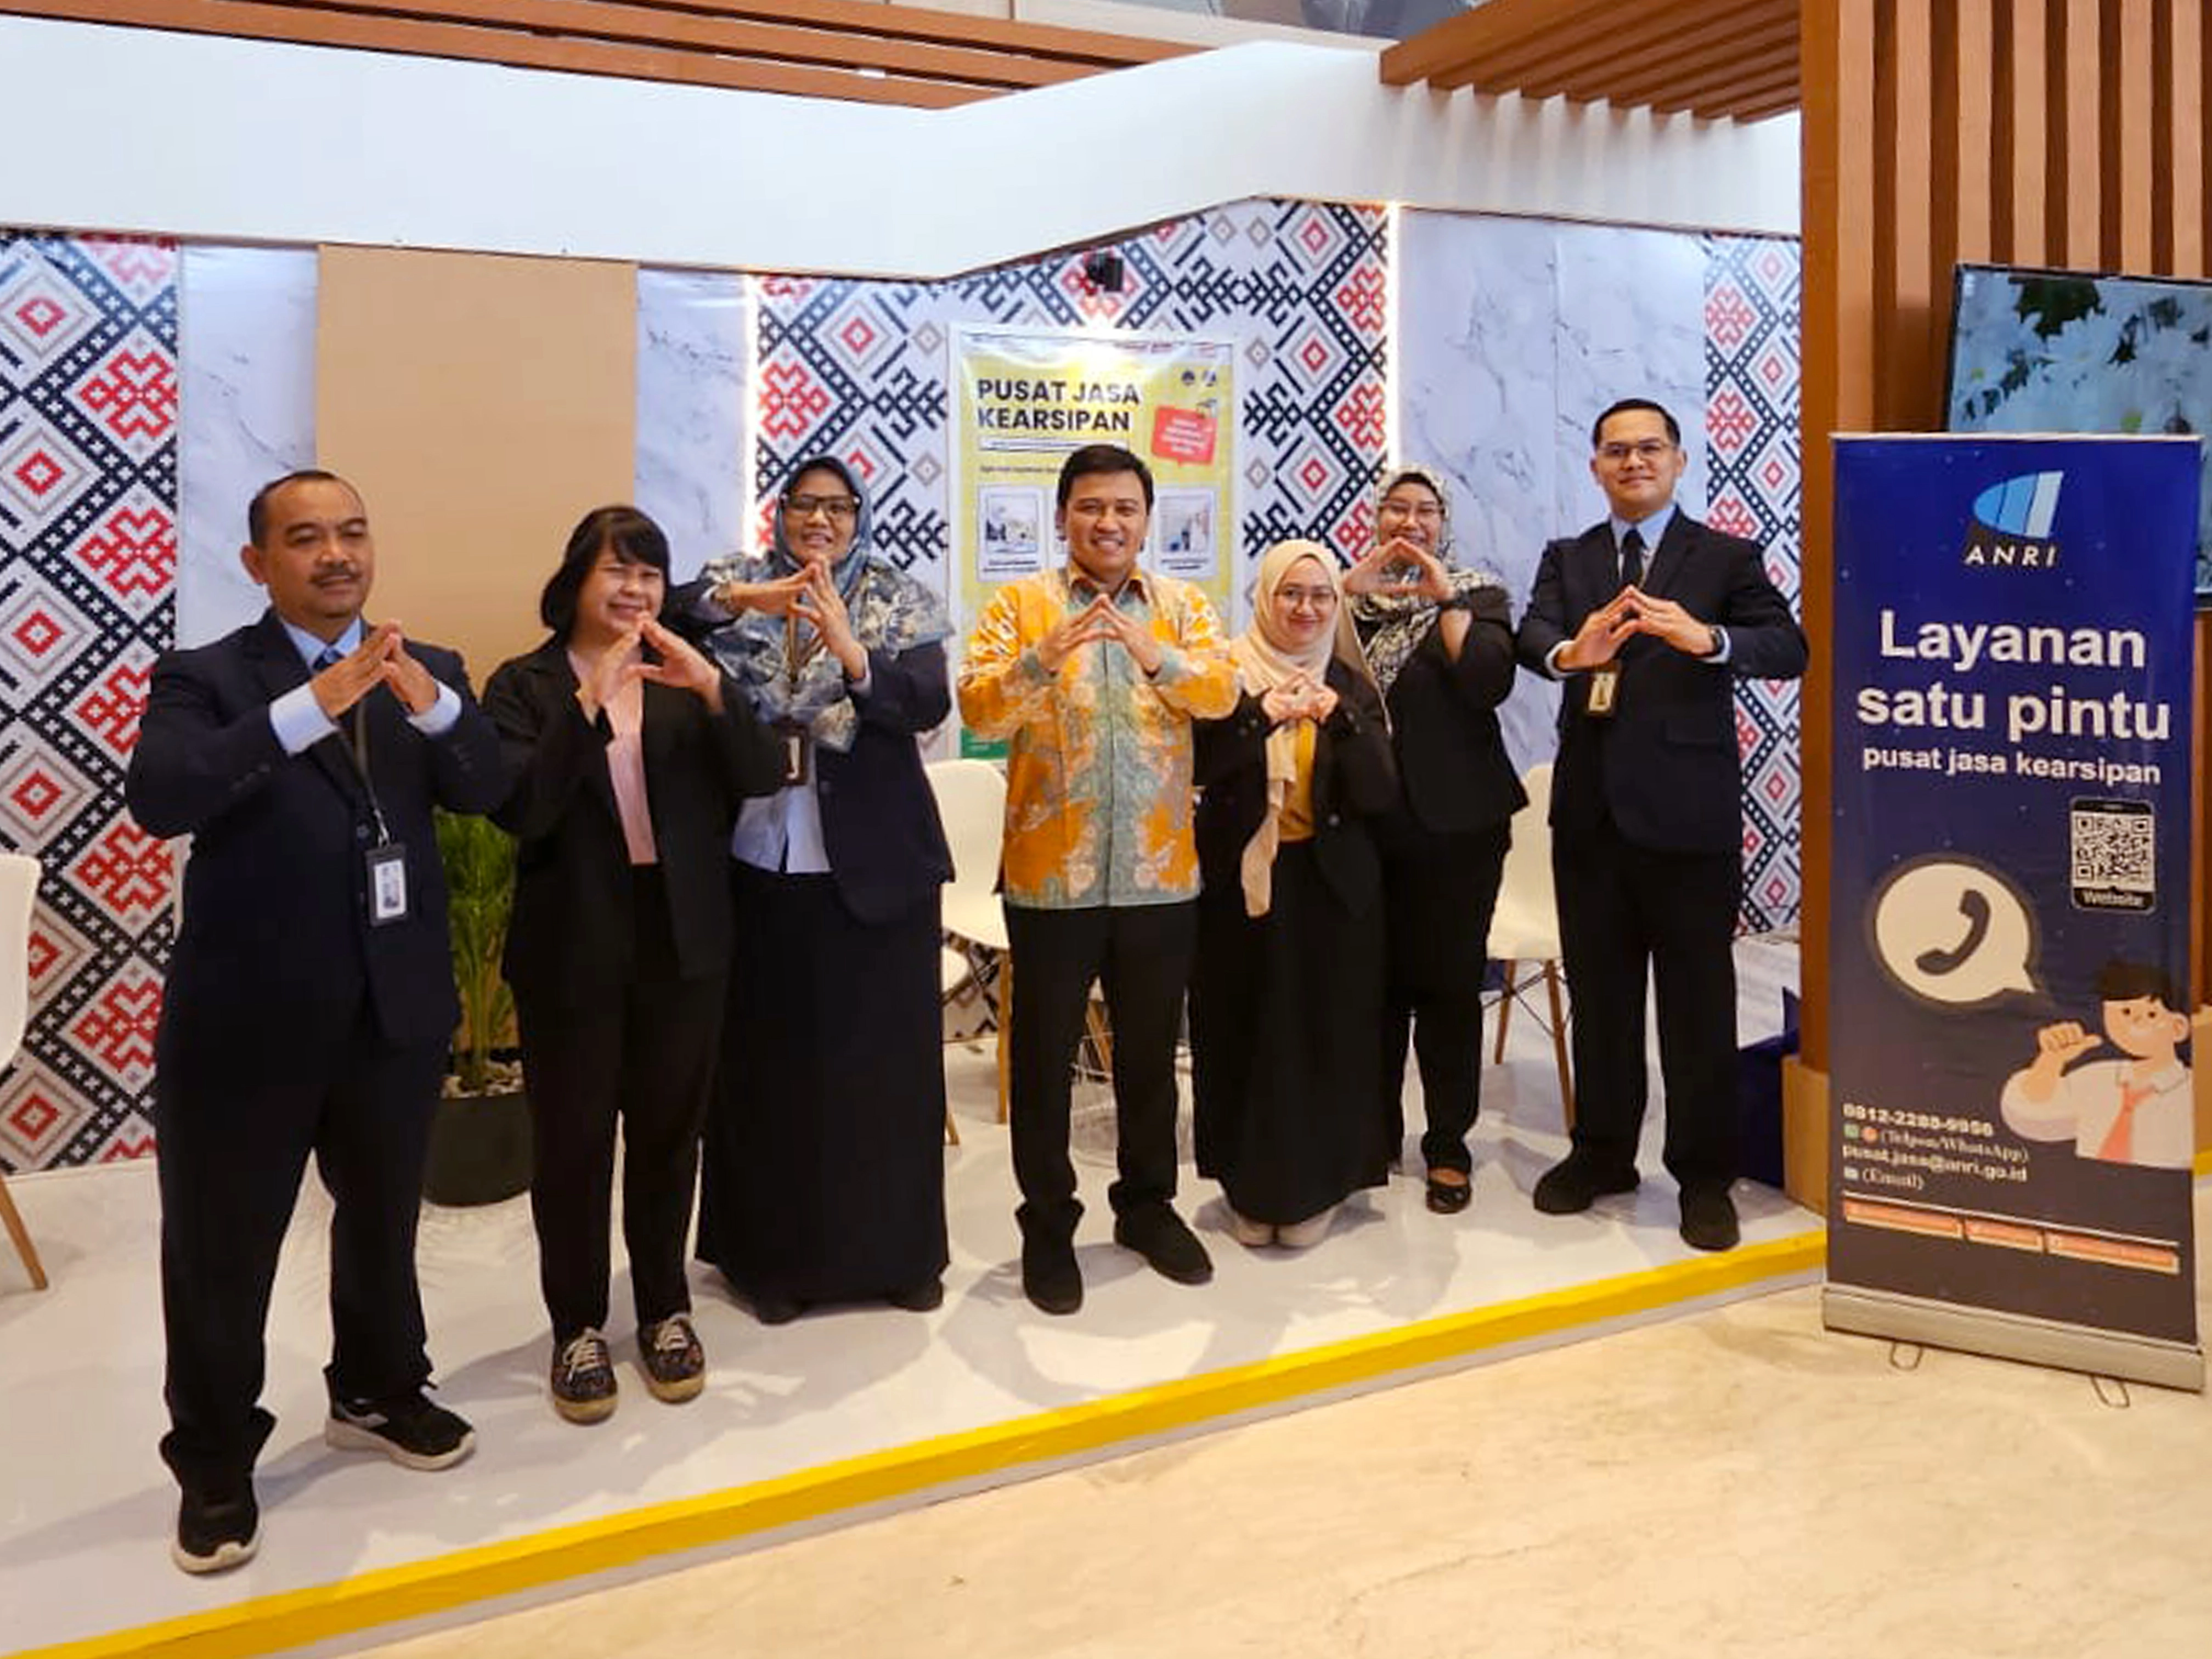 Hari Kearsipan Nasional ke 53 di Kalimantan Timur